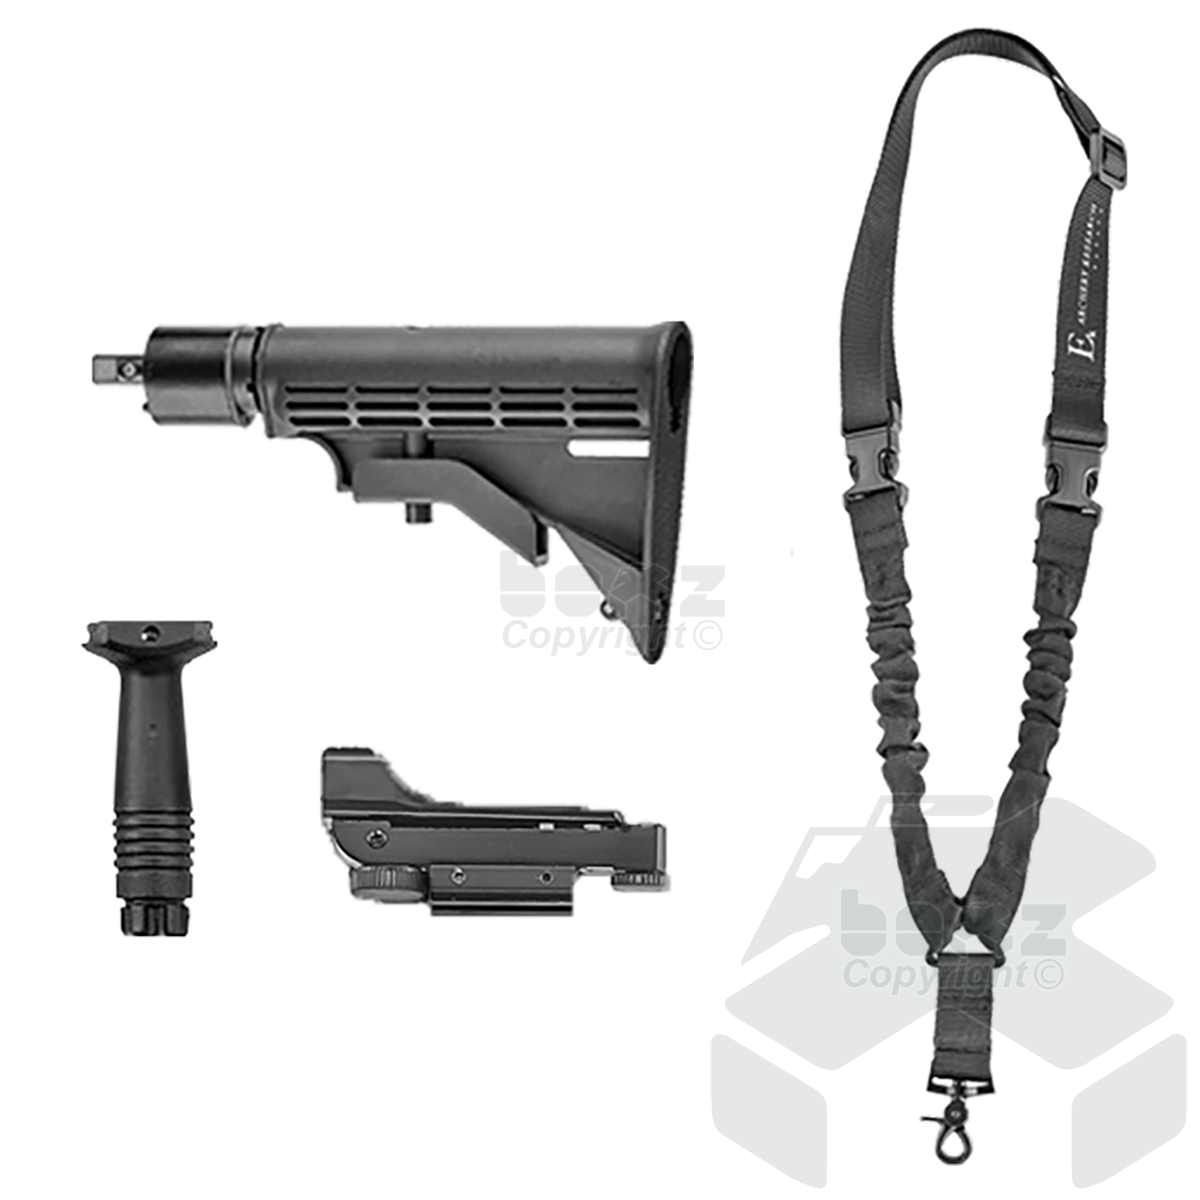 EK Archery R9 Cobra Deluxe Crossbow Kit - R9 Pistol Upgrade